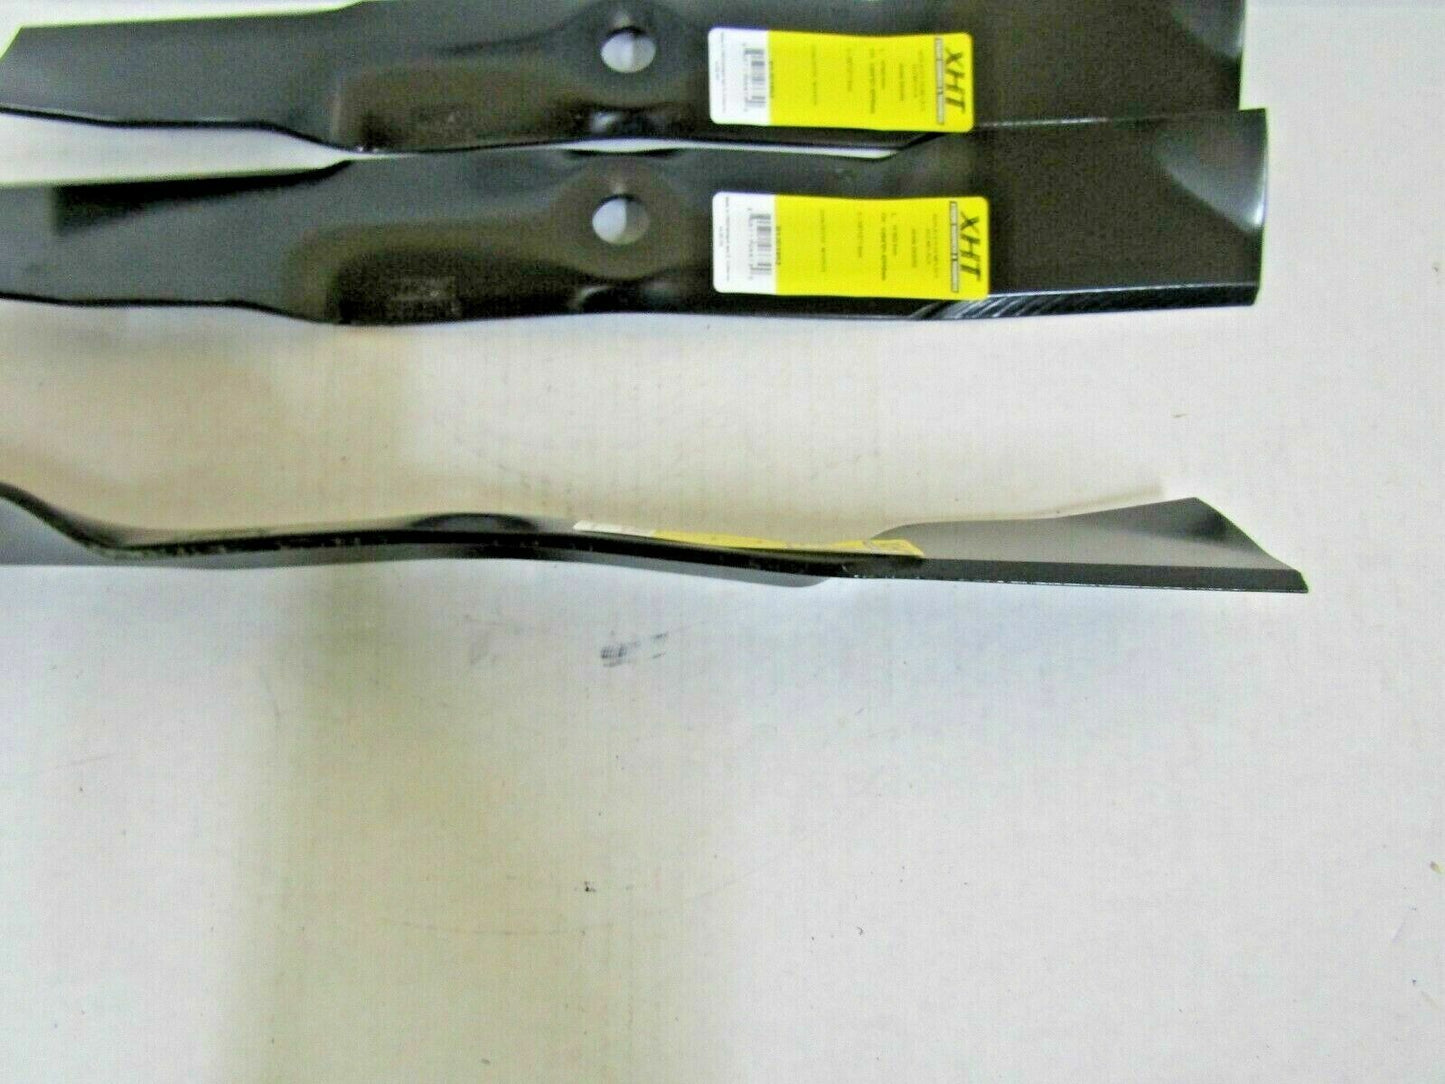 3 USA blades will fit John Deere X485 X495 X500 X520 X530 X534 X540 X575 X585